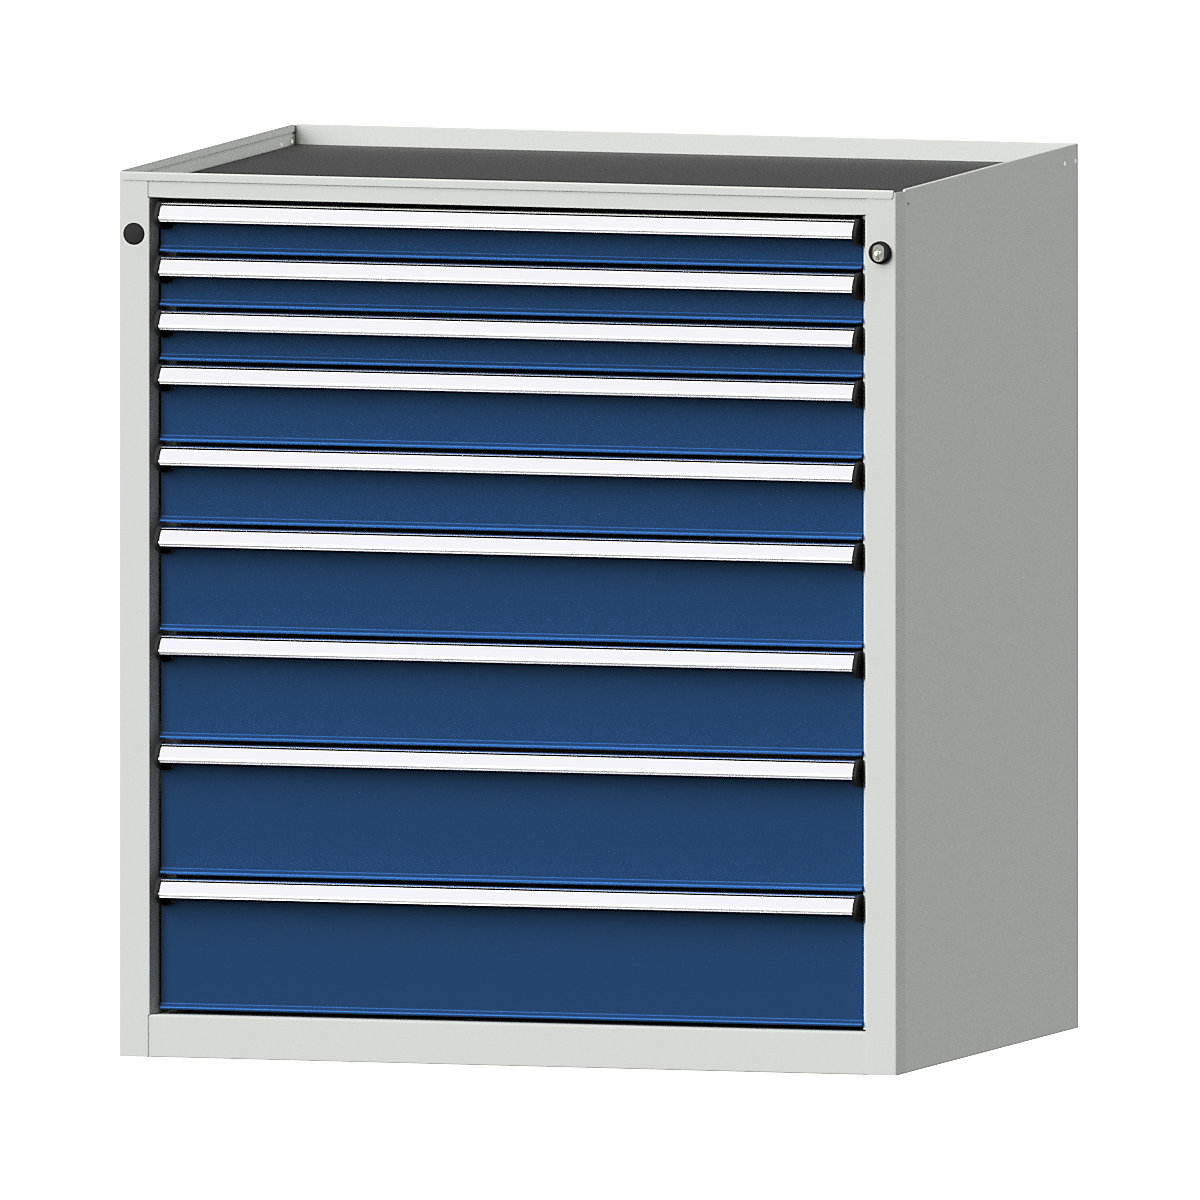 Szafa z szufladami – ANKE, szer. x głęb. 910 x 675 mm, 9 szuflad, wys. 980 mm, front niebieski gencjanowy-10